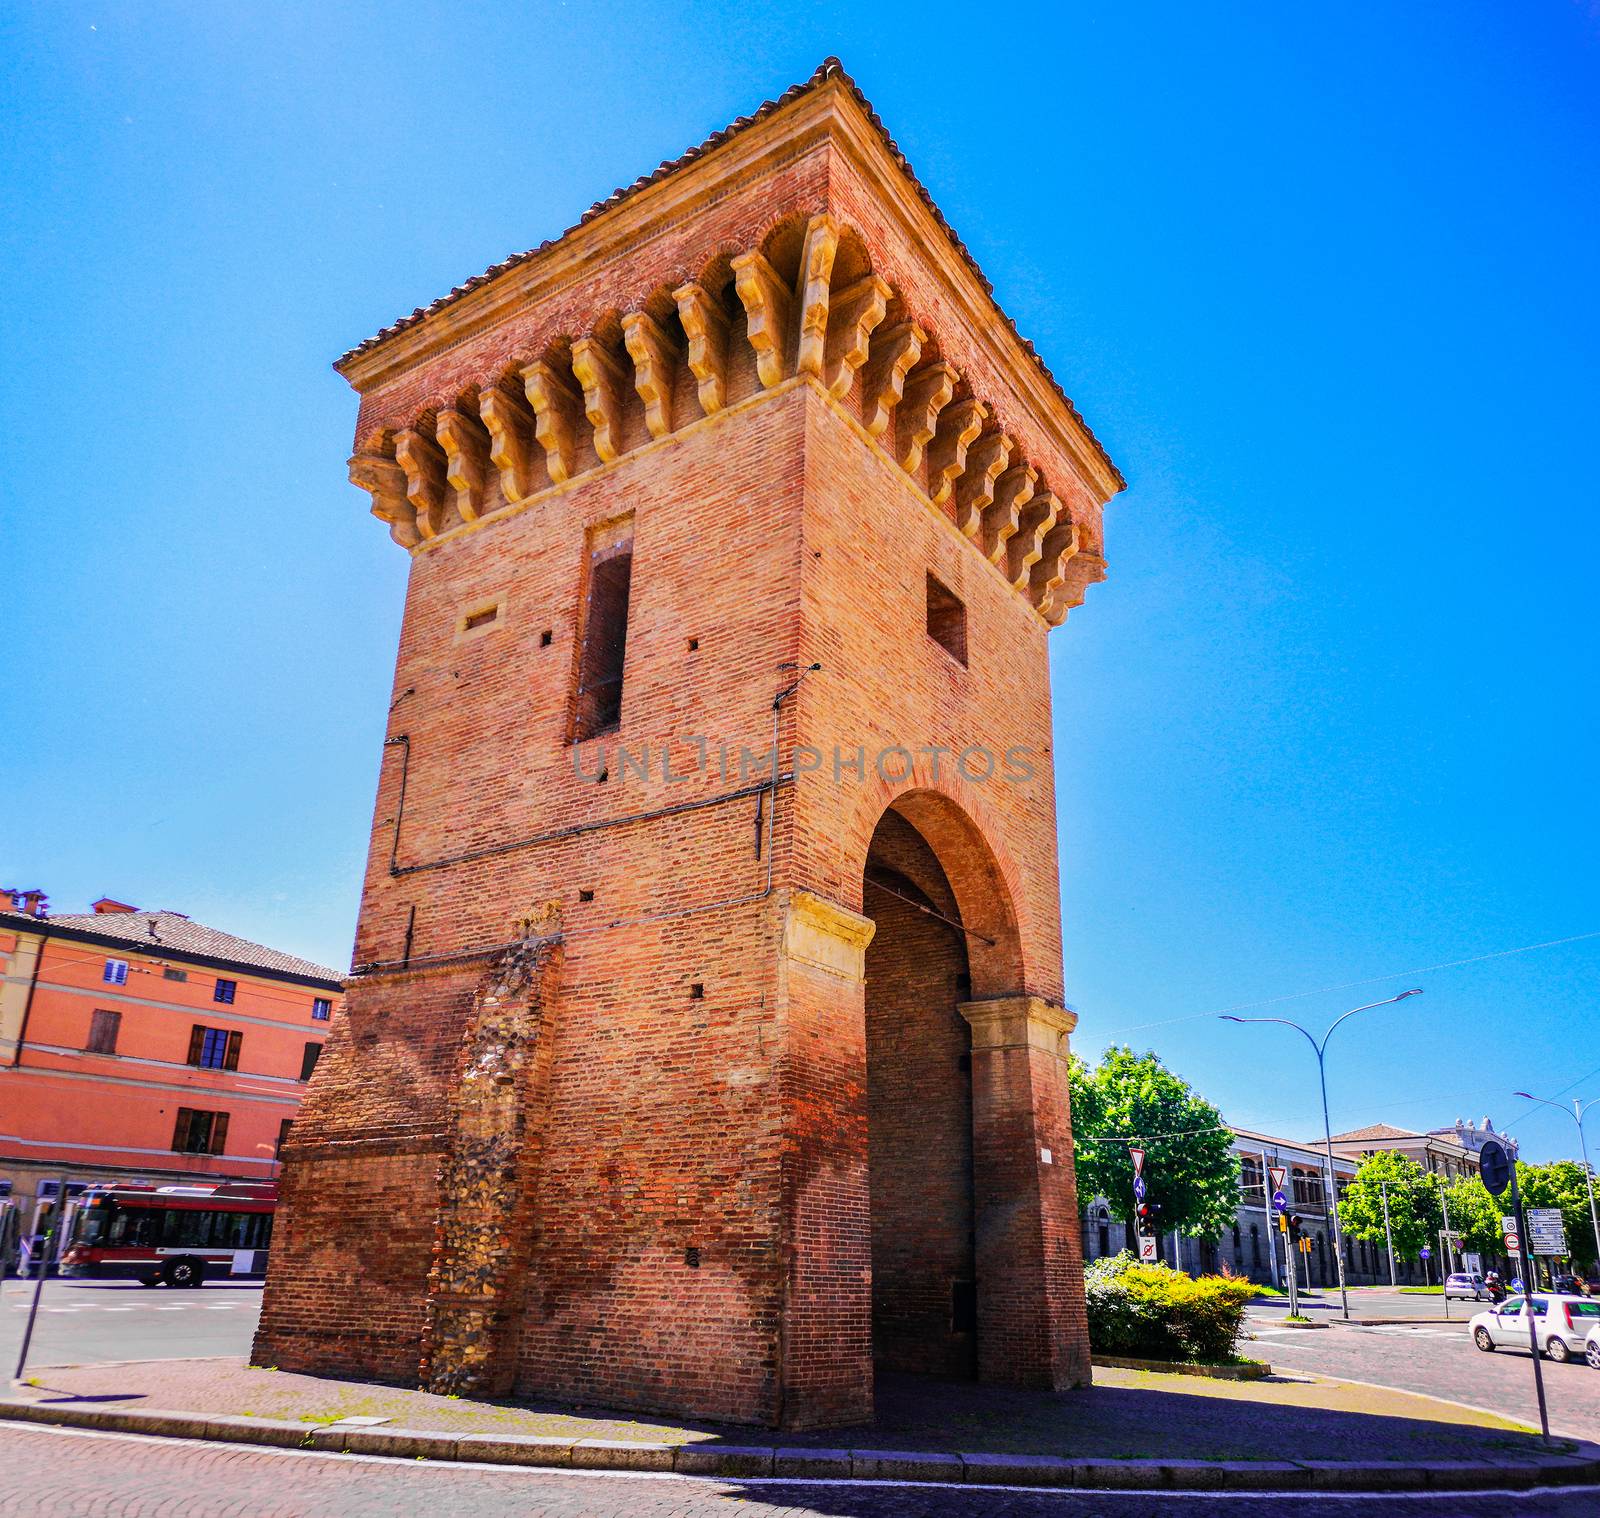 Porta Castiglione in Bologna landmark in Emilia Romagna - Italy by LucaLorenzelli